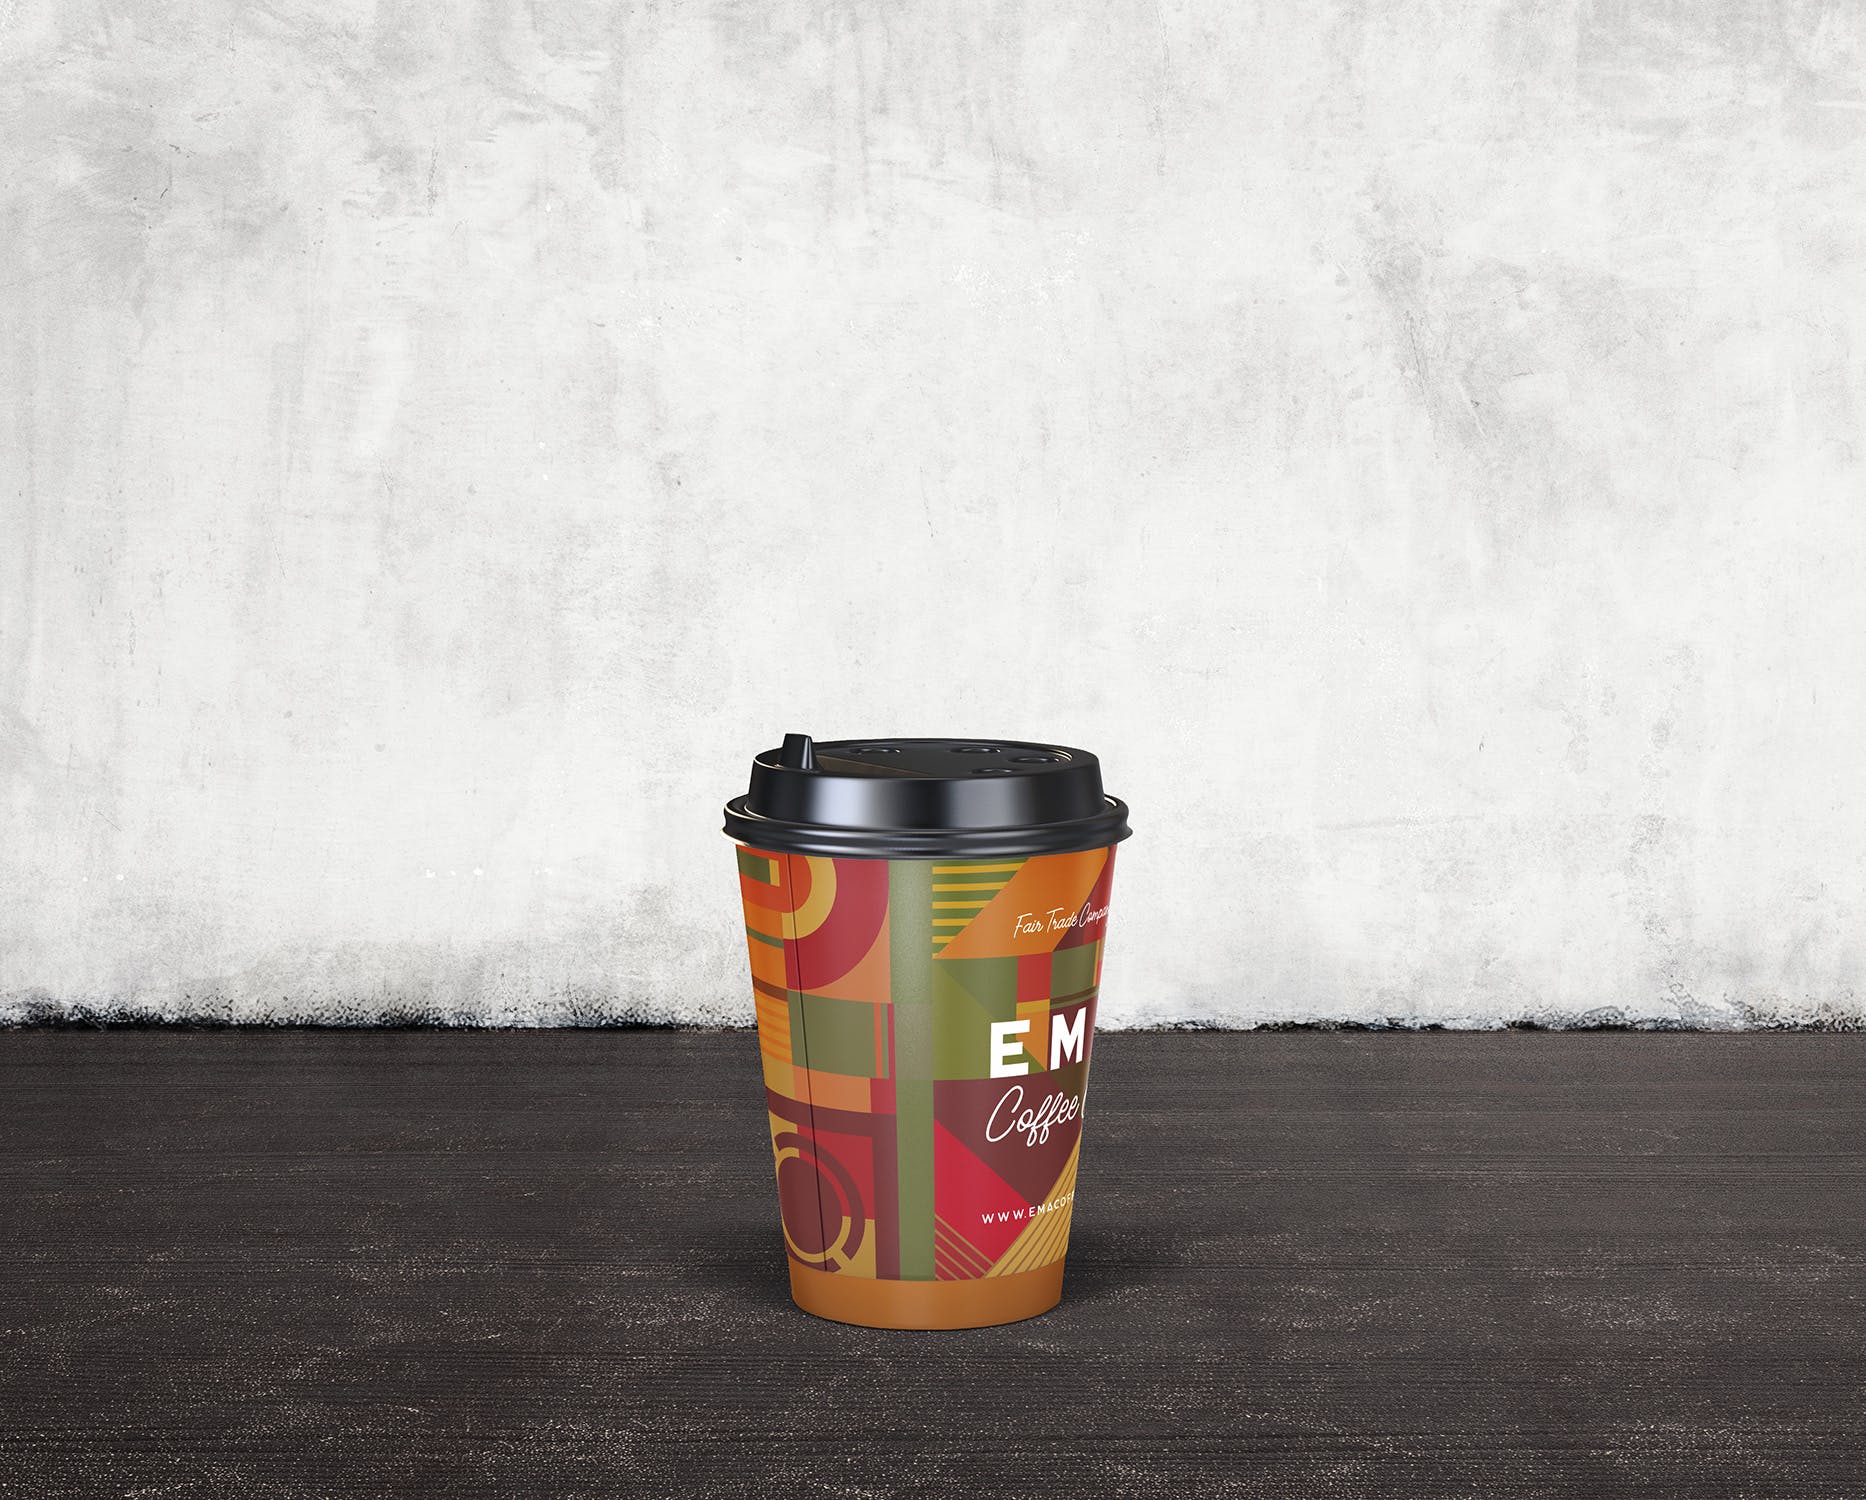 8个咖啡纸杯外观设计效果图非凡图库精选 8 Coffee Paper Cup Mockups插图(3)